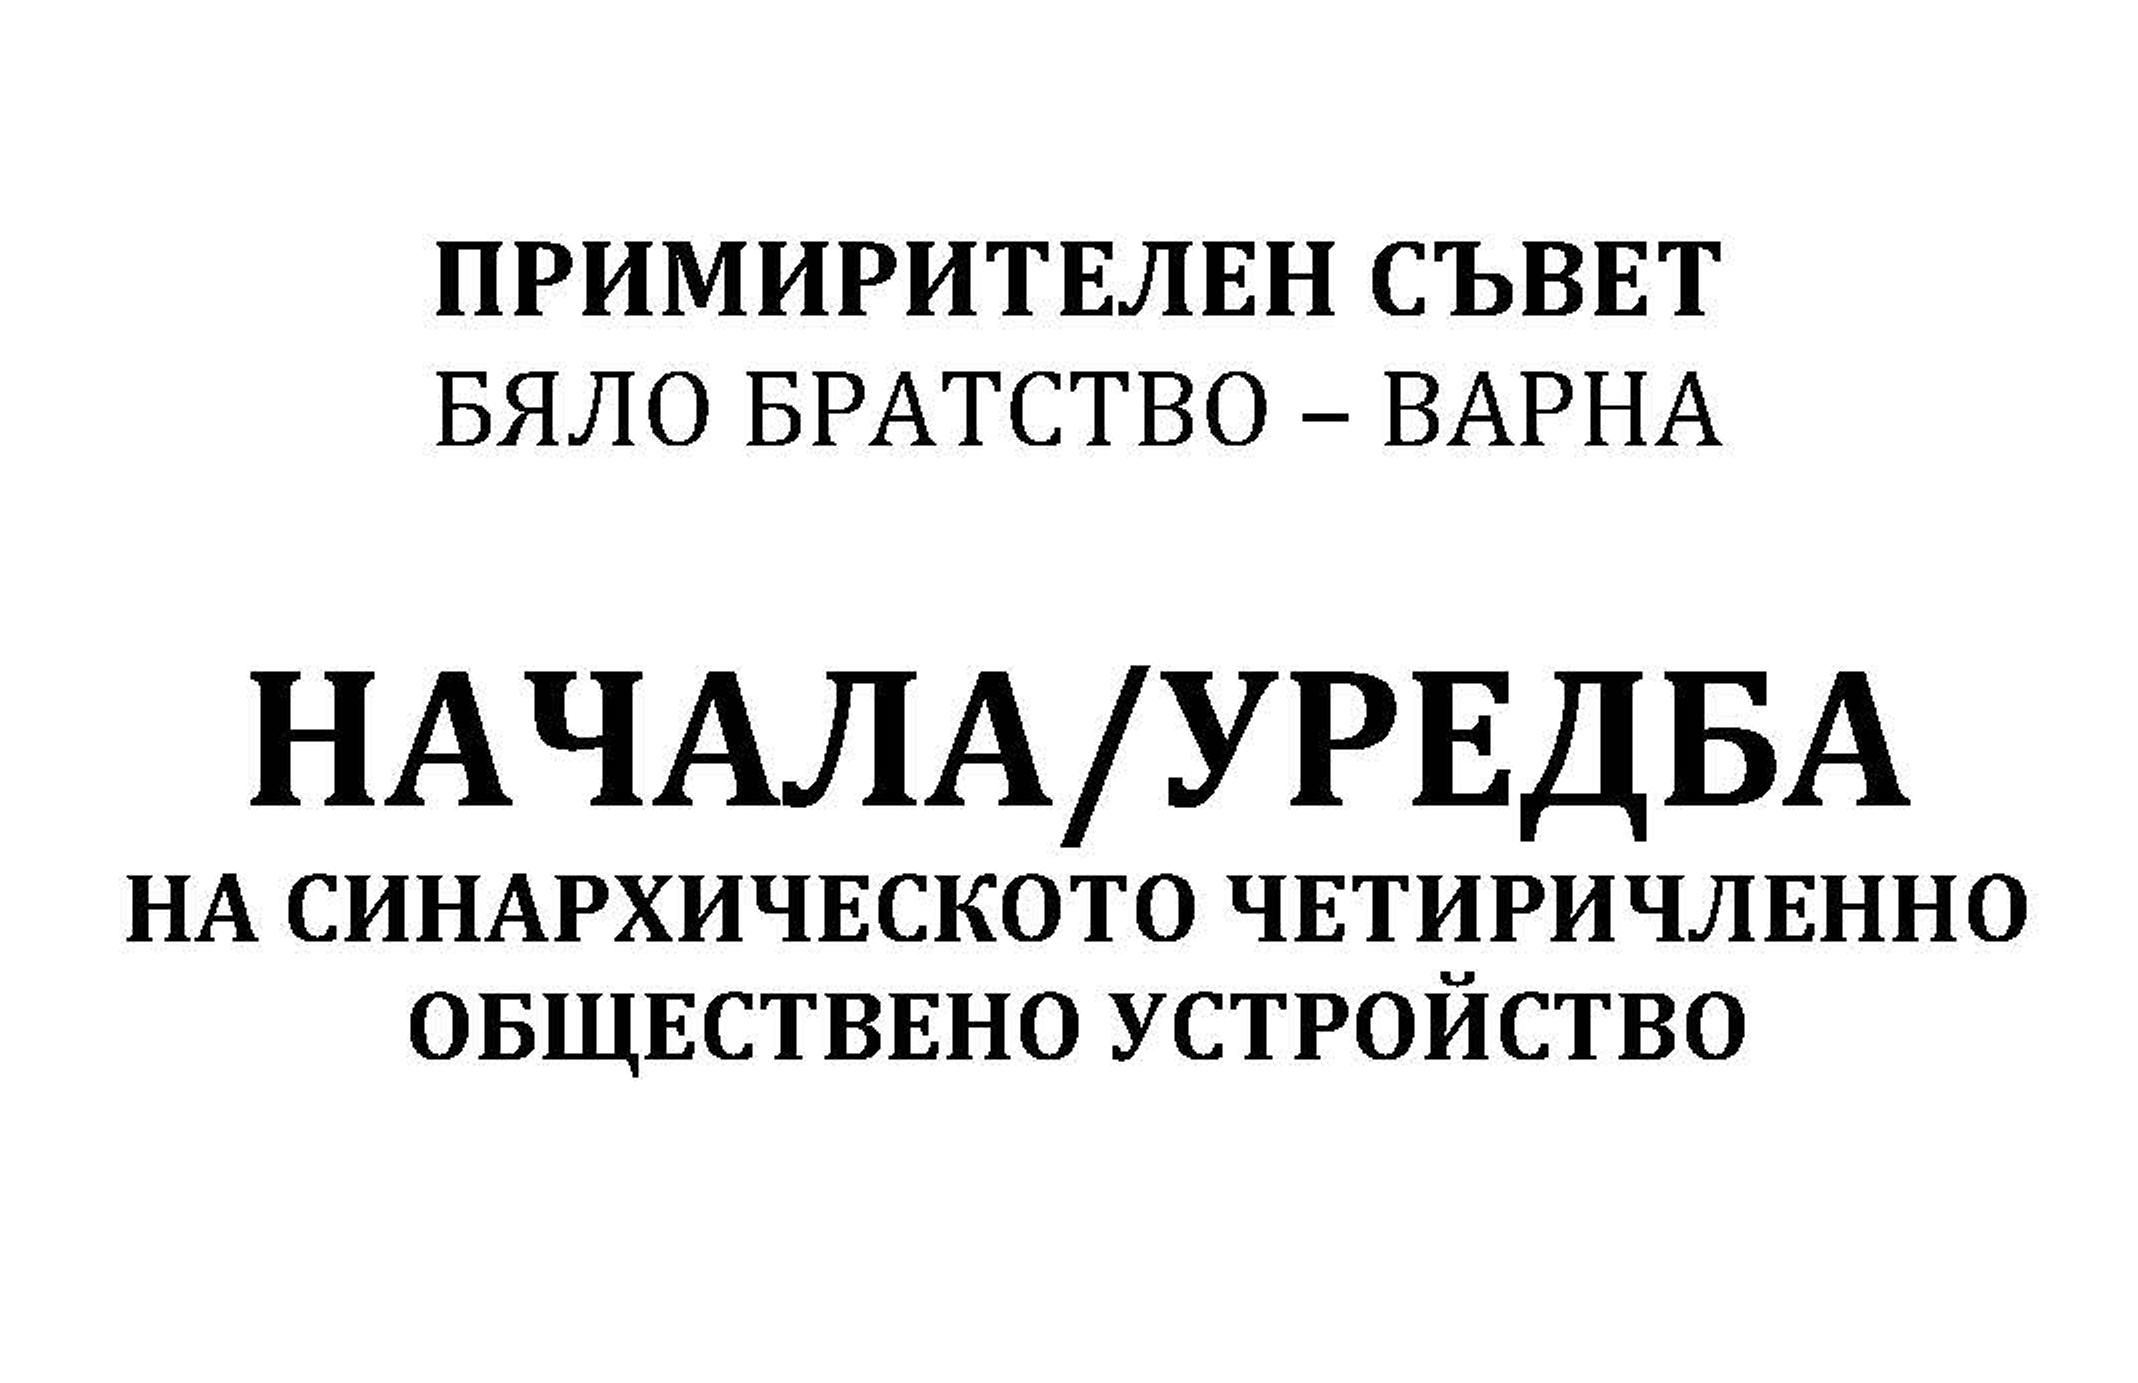 Pages from Примирителен съвет - Братство Варна - Димитър Калев